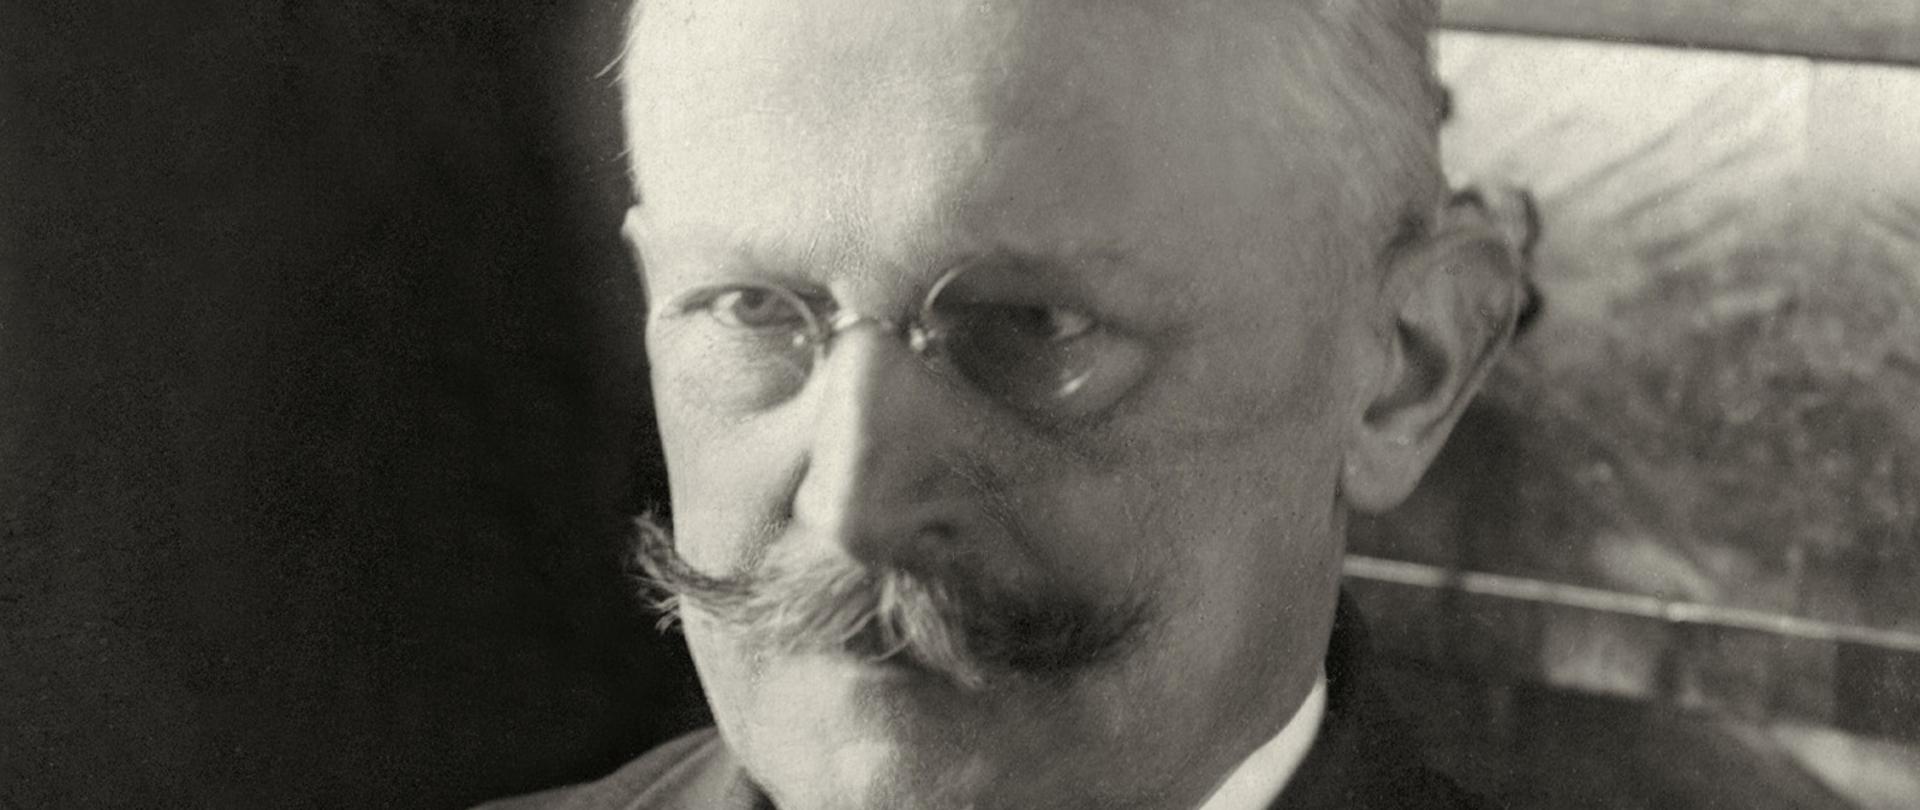 Stanisław Patek - minister spraw zagranicznych. Czarno-białe zdjęcie mężczyzny w okularach i wąsami, w ciemnej dwurzędowej marynarce, ciemny krawat.